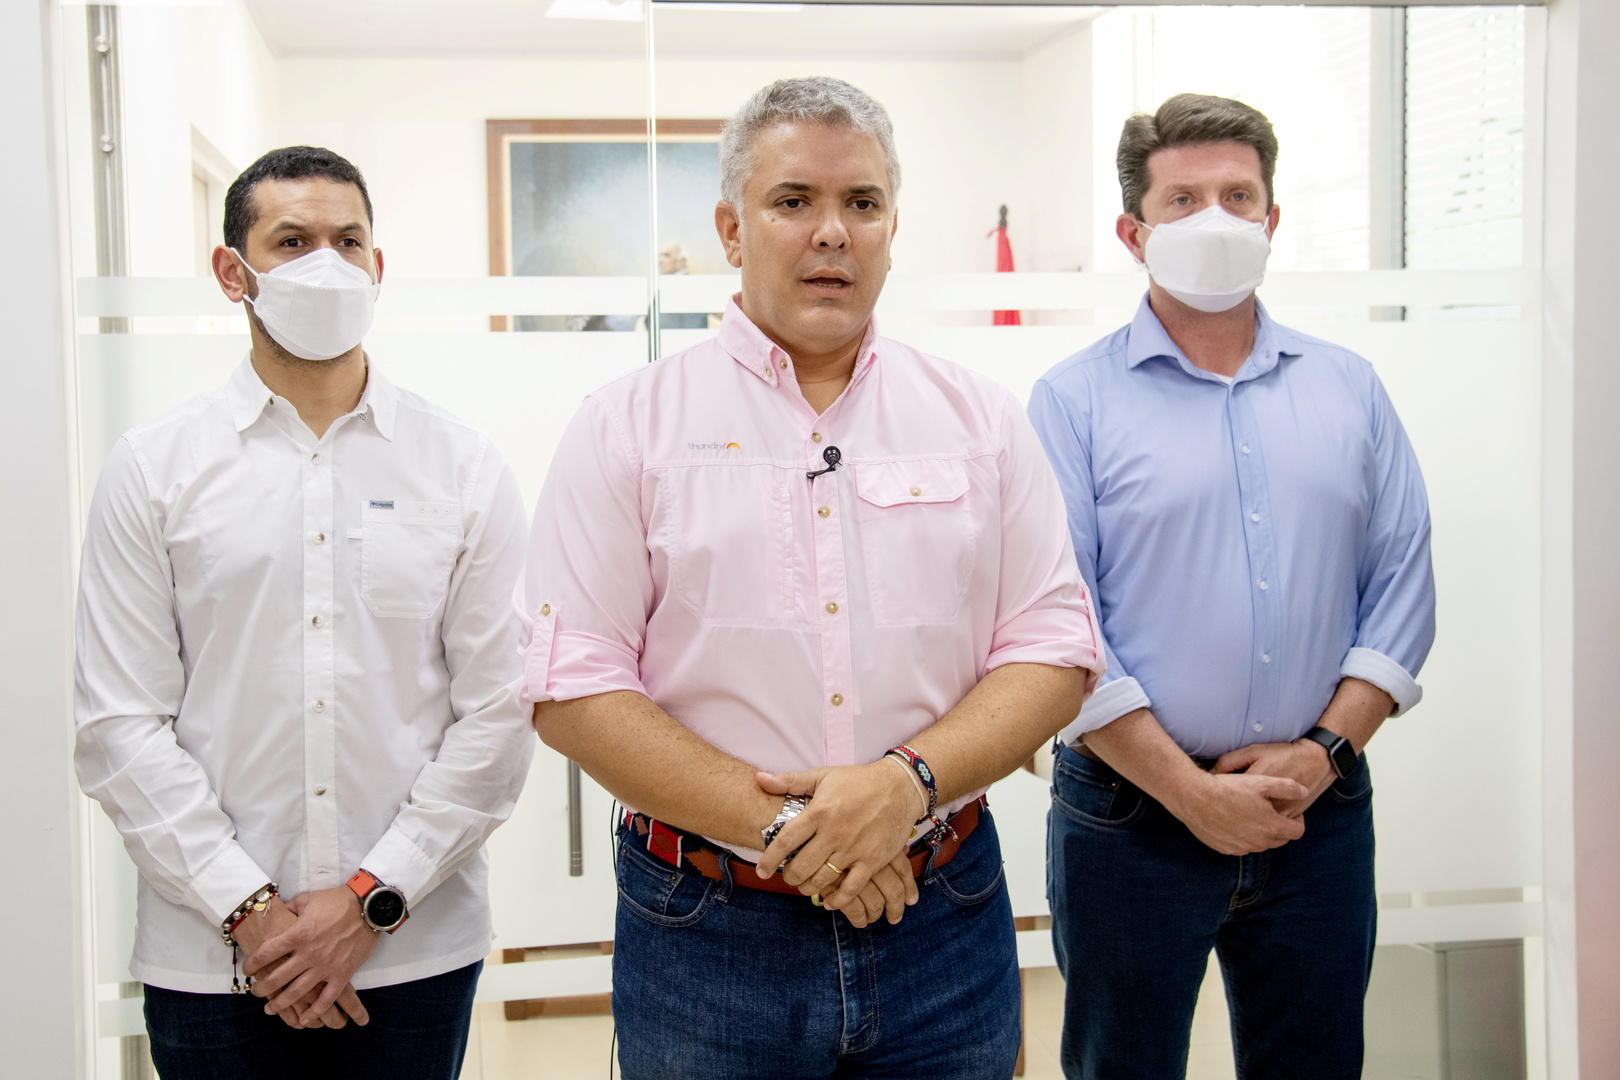 بايدن يؤكد دعمه للرئيس الكولومبي بعد حادث استهداف مروحيته